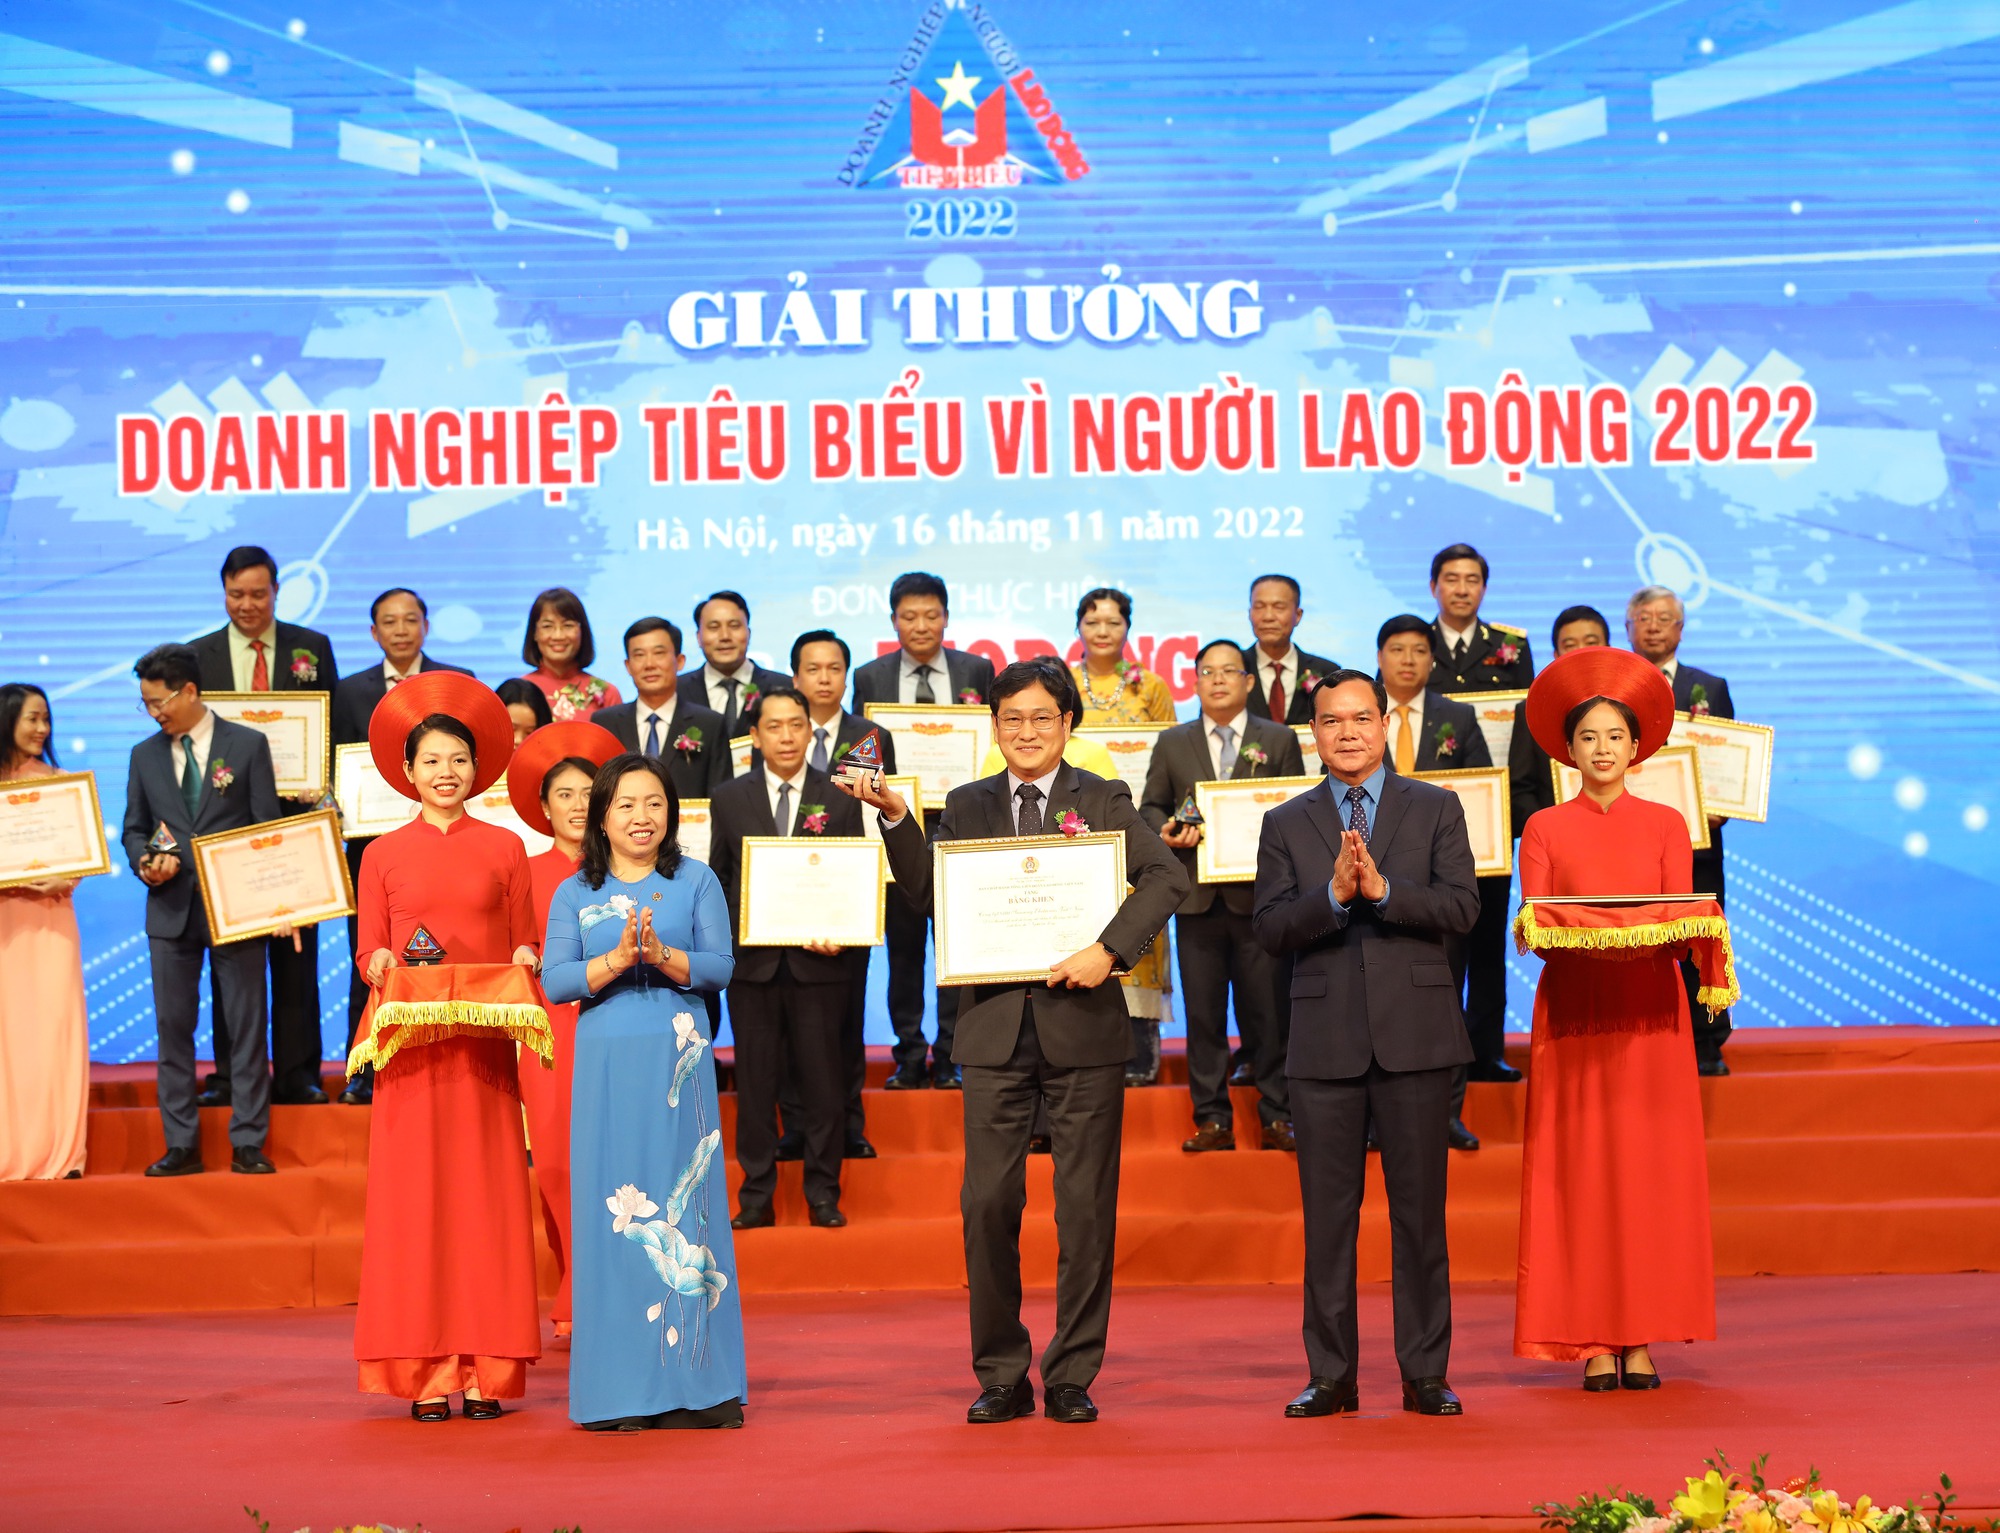 Samsung Electronics Việt Nam: 'Doanh nghiệp tiêu biểu vì người lao động' năm 2022 - Ảnh 1.